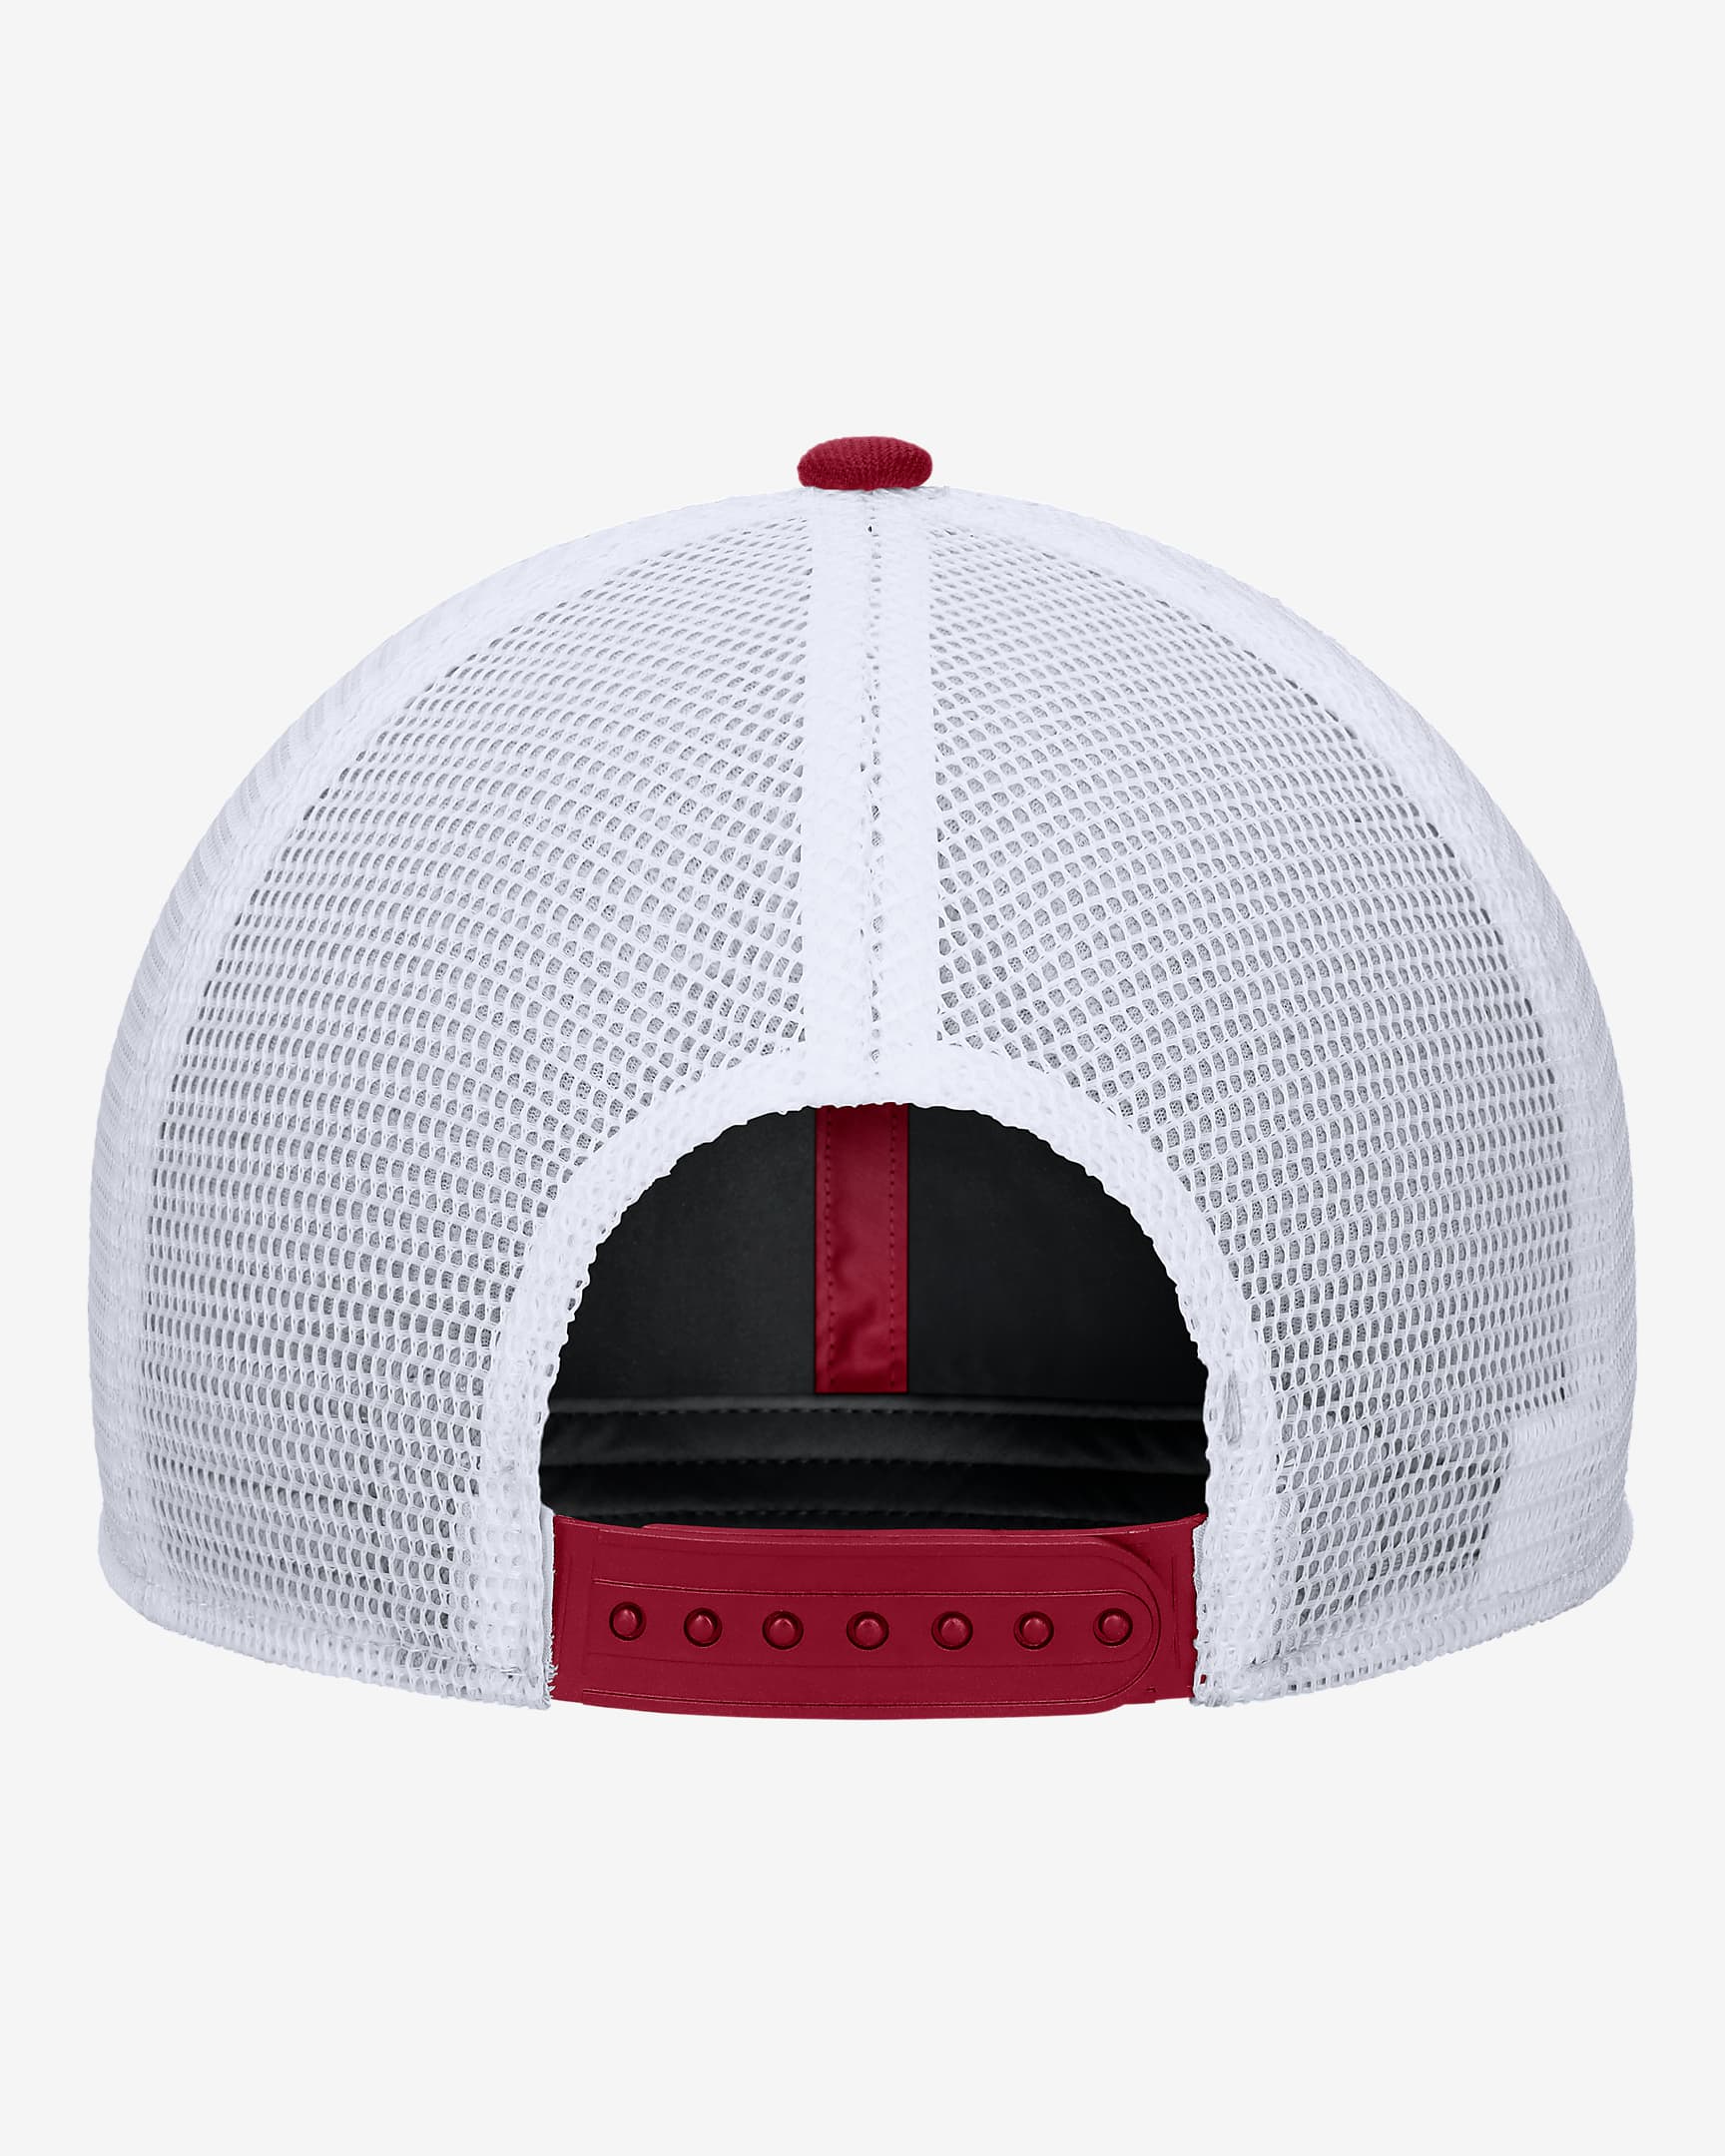 USC Nike College Snapback Trucker Hat. Nike.com